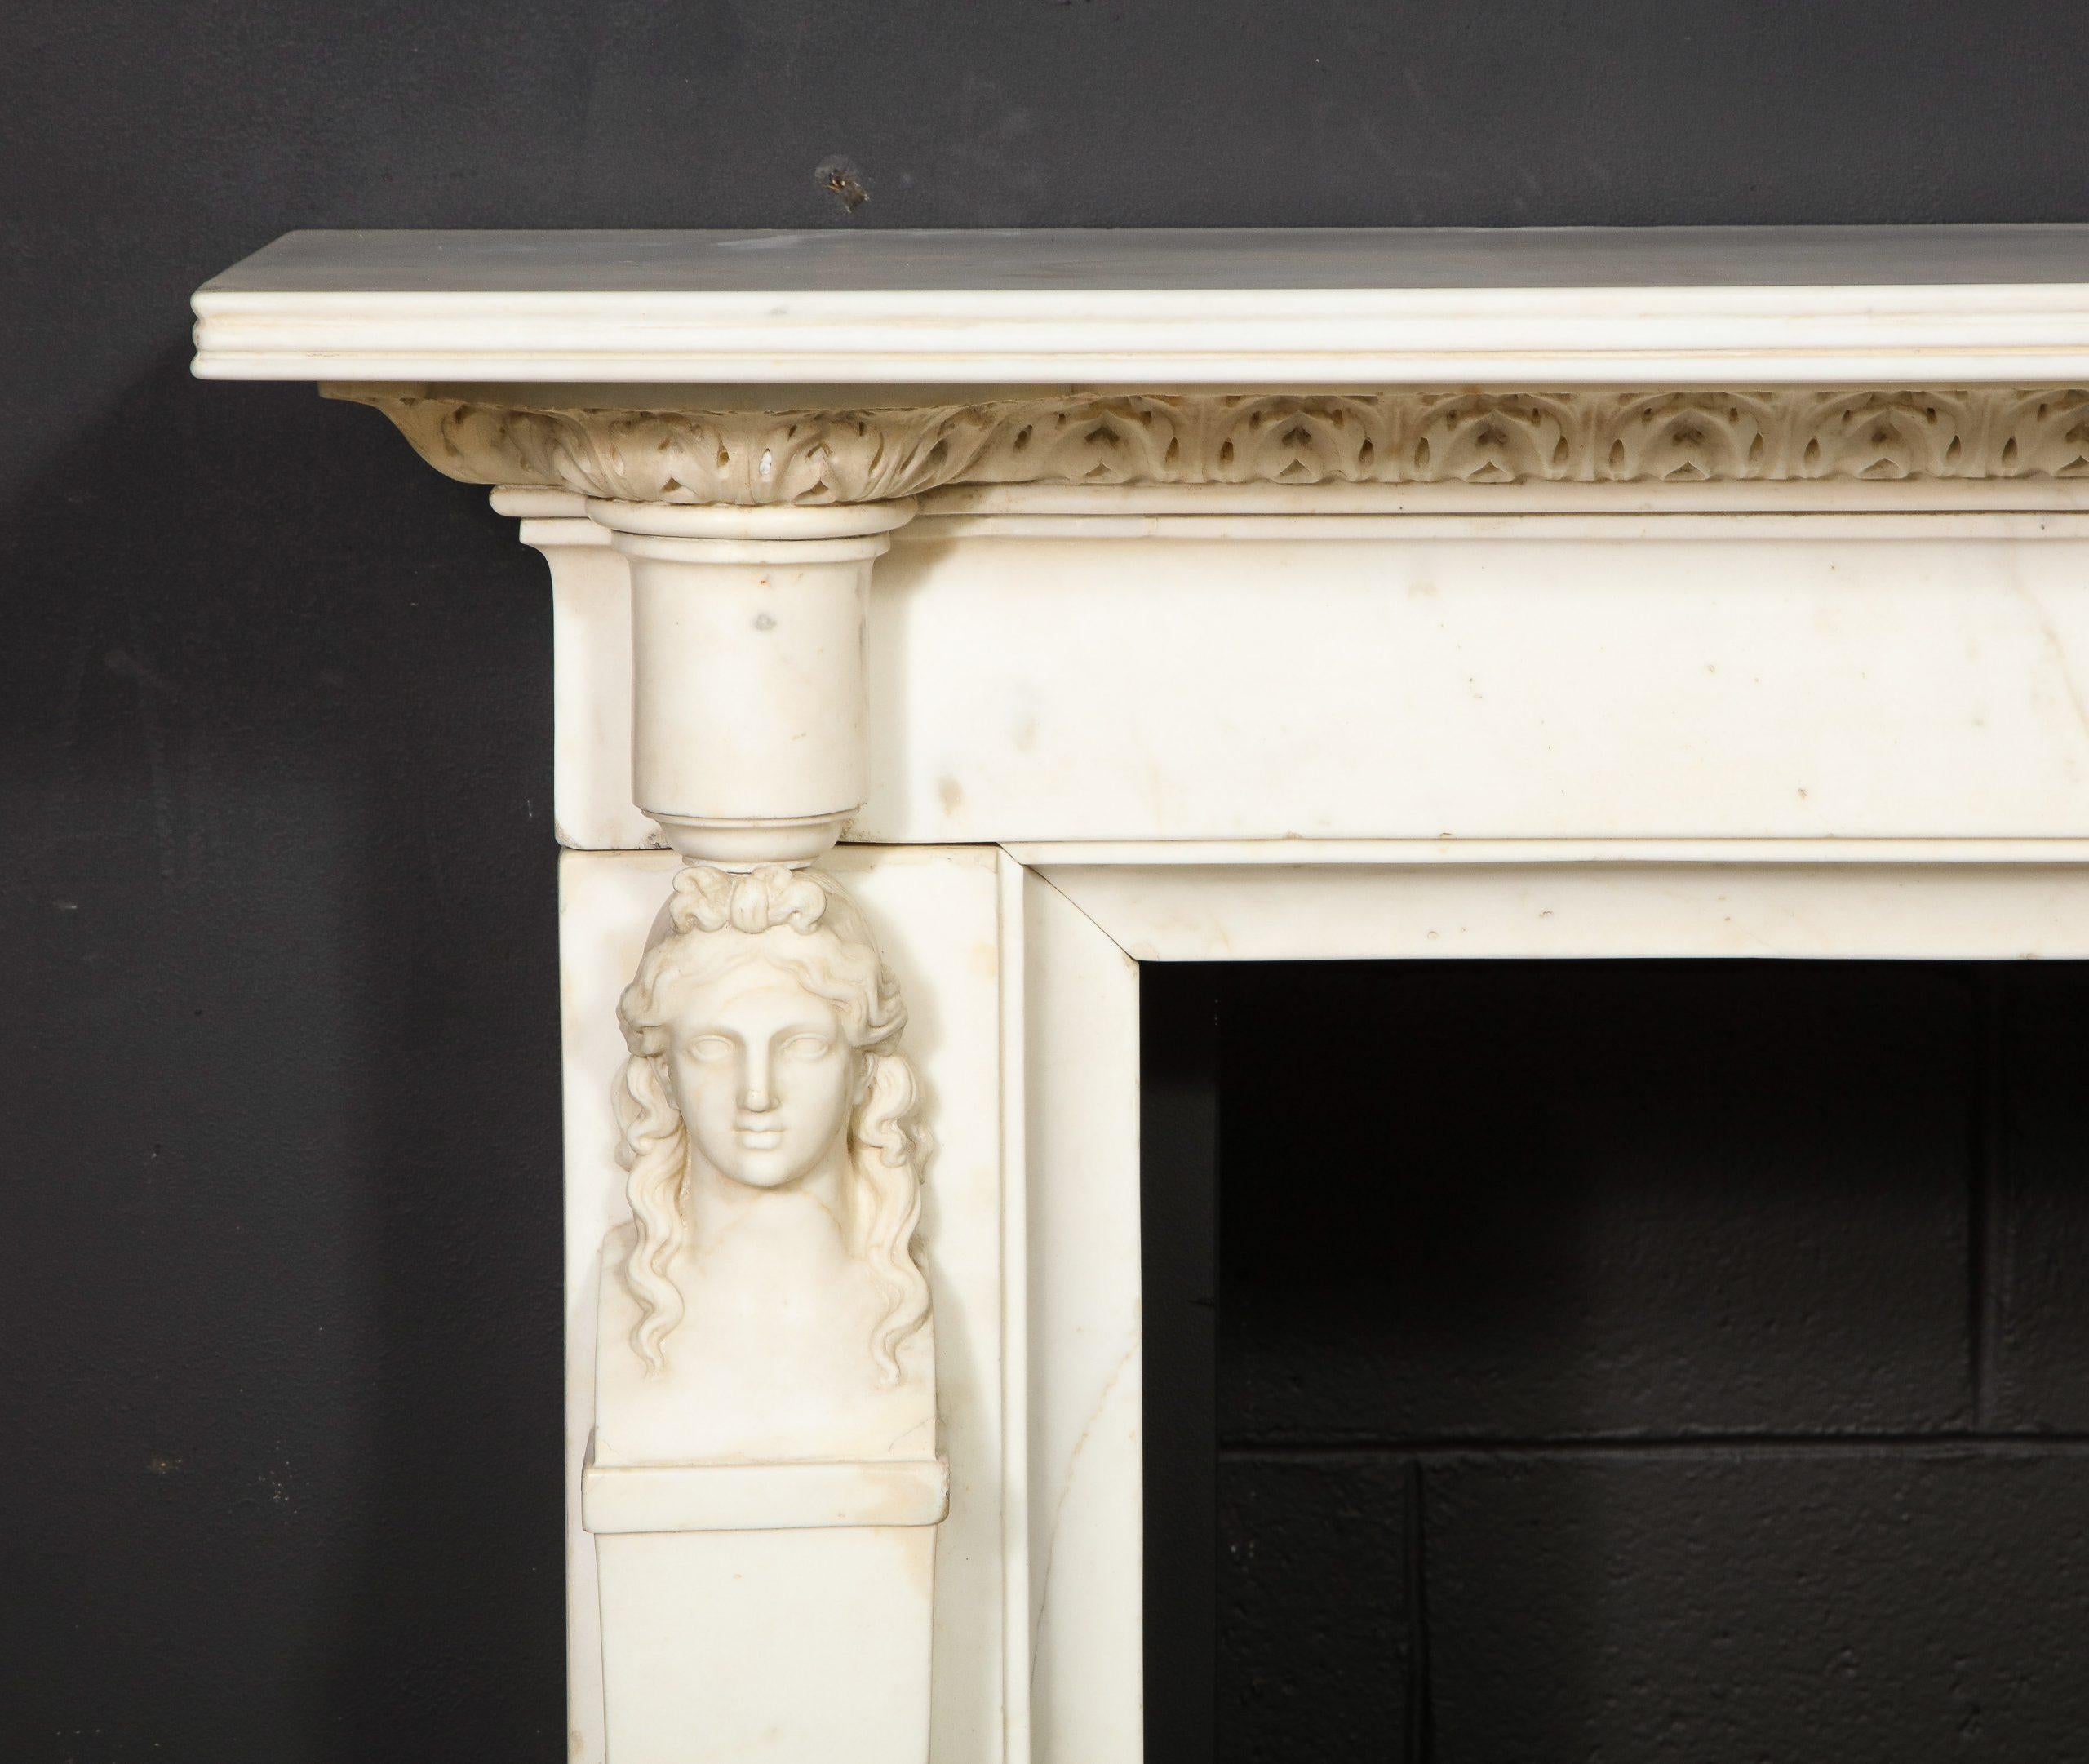 Une belle cheminée de style Régence anglaise, sculptée dans du marbre statuaire avec deux cariatides féminines qui soutiennent le plateau et la frise cannelés, sculptés de feuilles d'acanthe en relief. 
Dimensions globales de la cheminée : 67